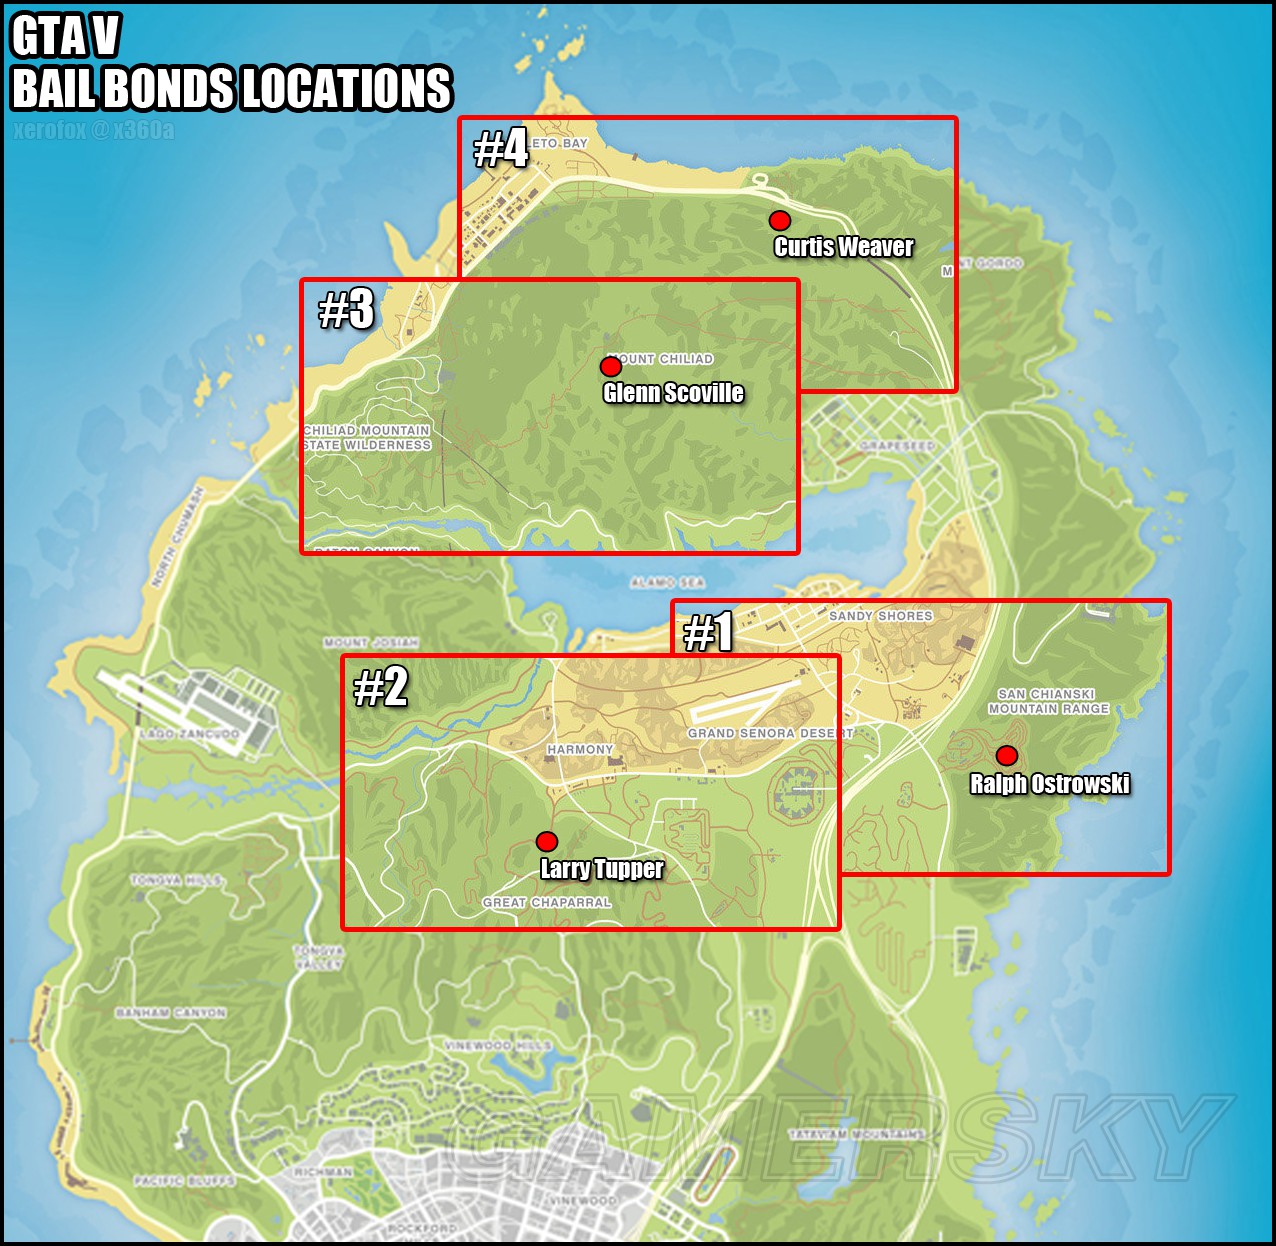 Glenn scoville gta 5 map location